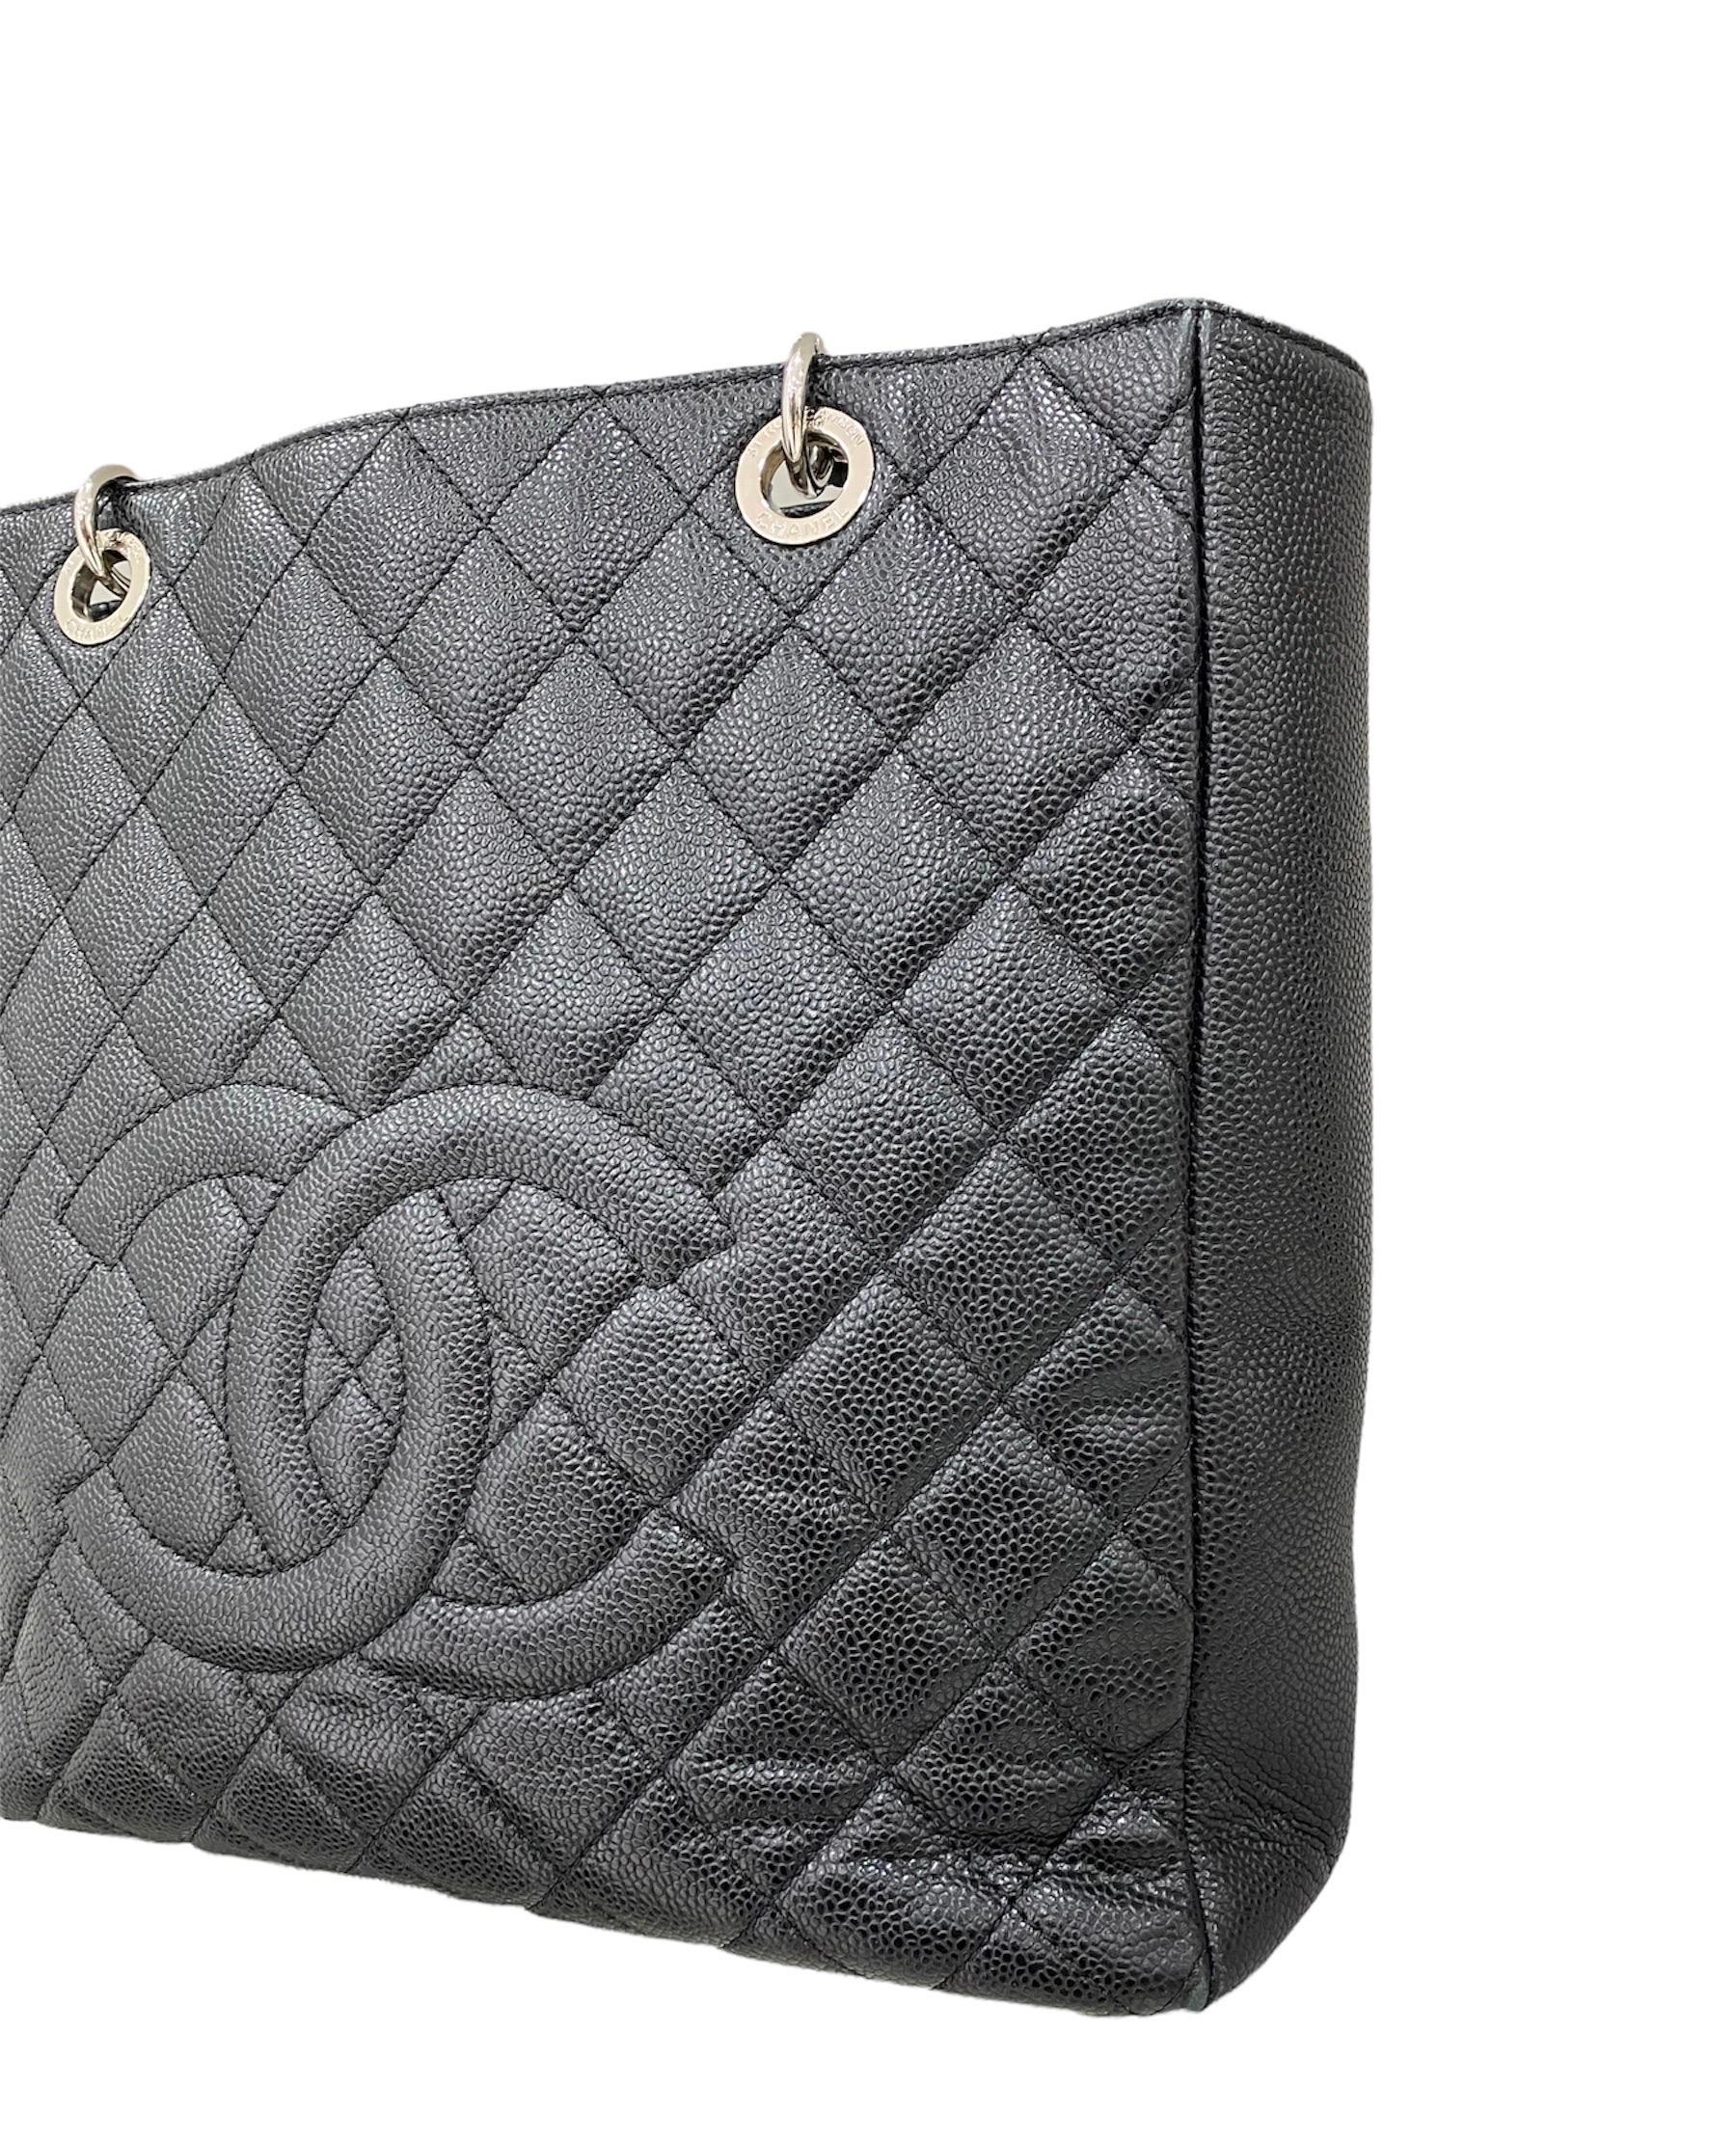 2013 Chanel PST Black Caviar Leather Shoulder Bag  3